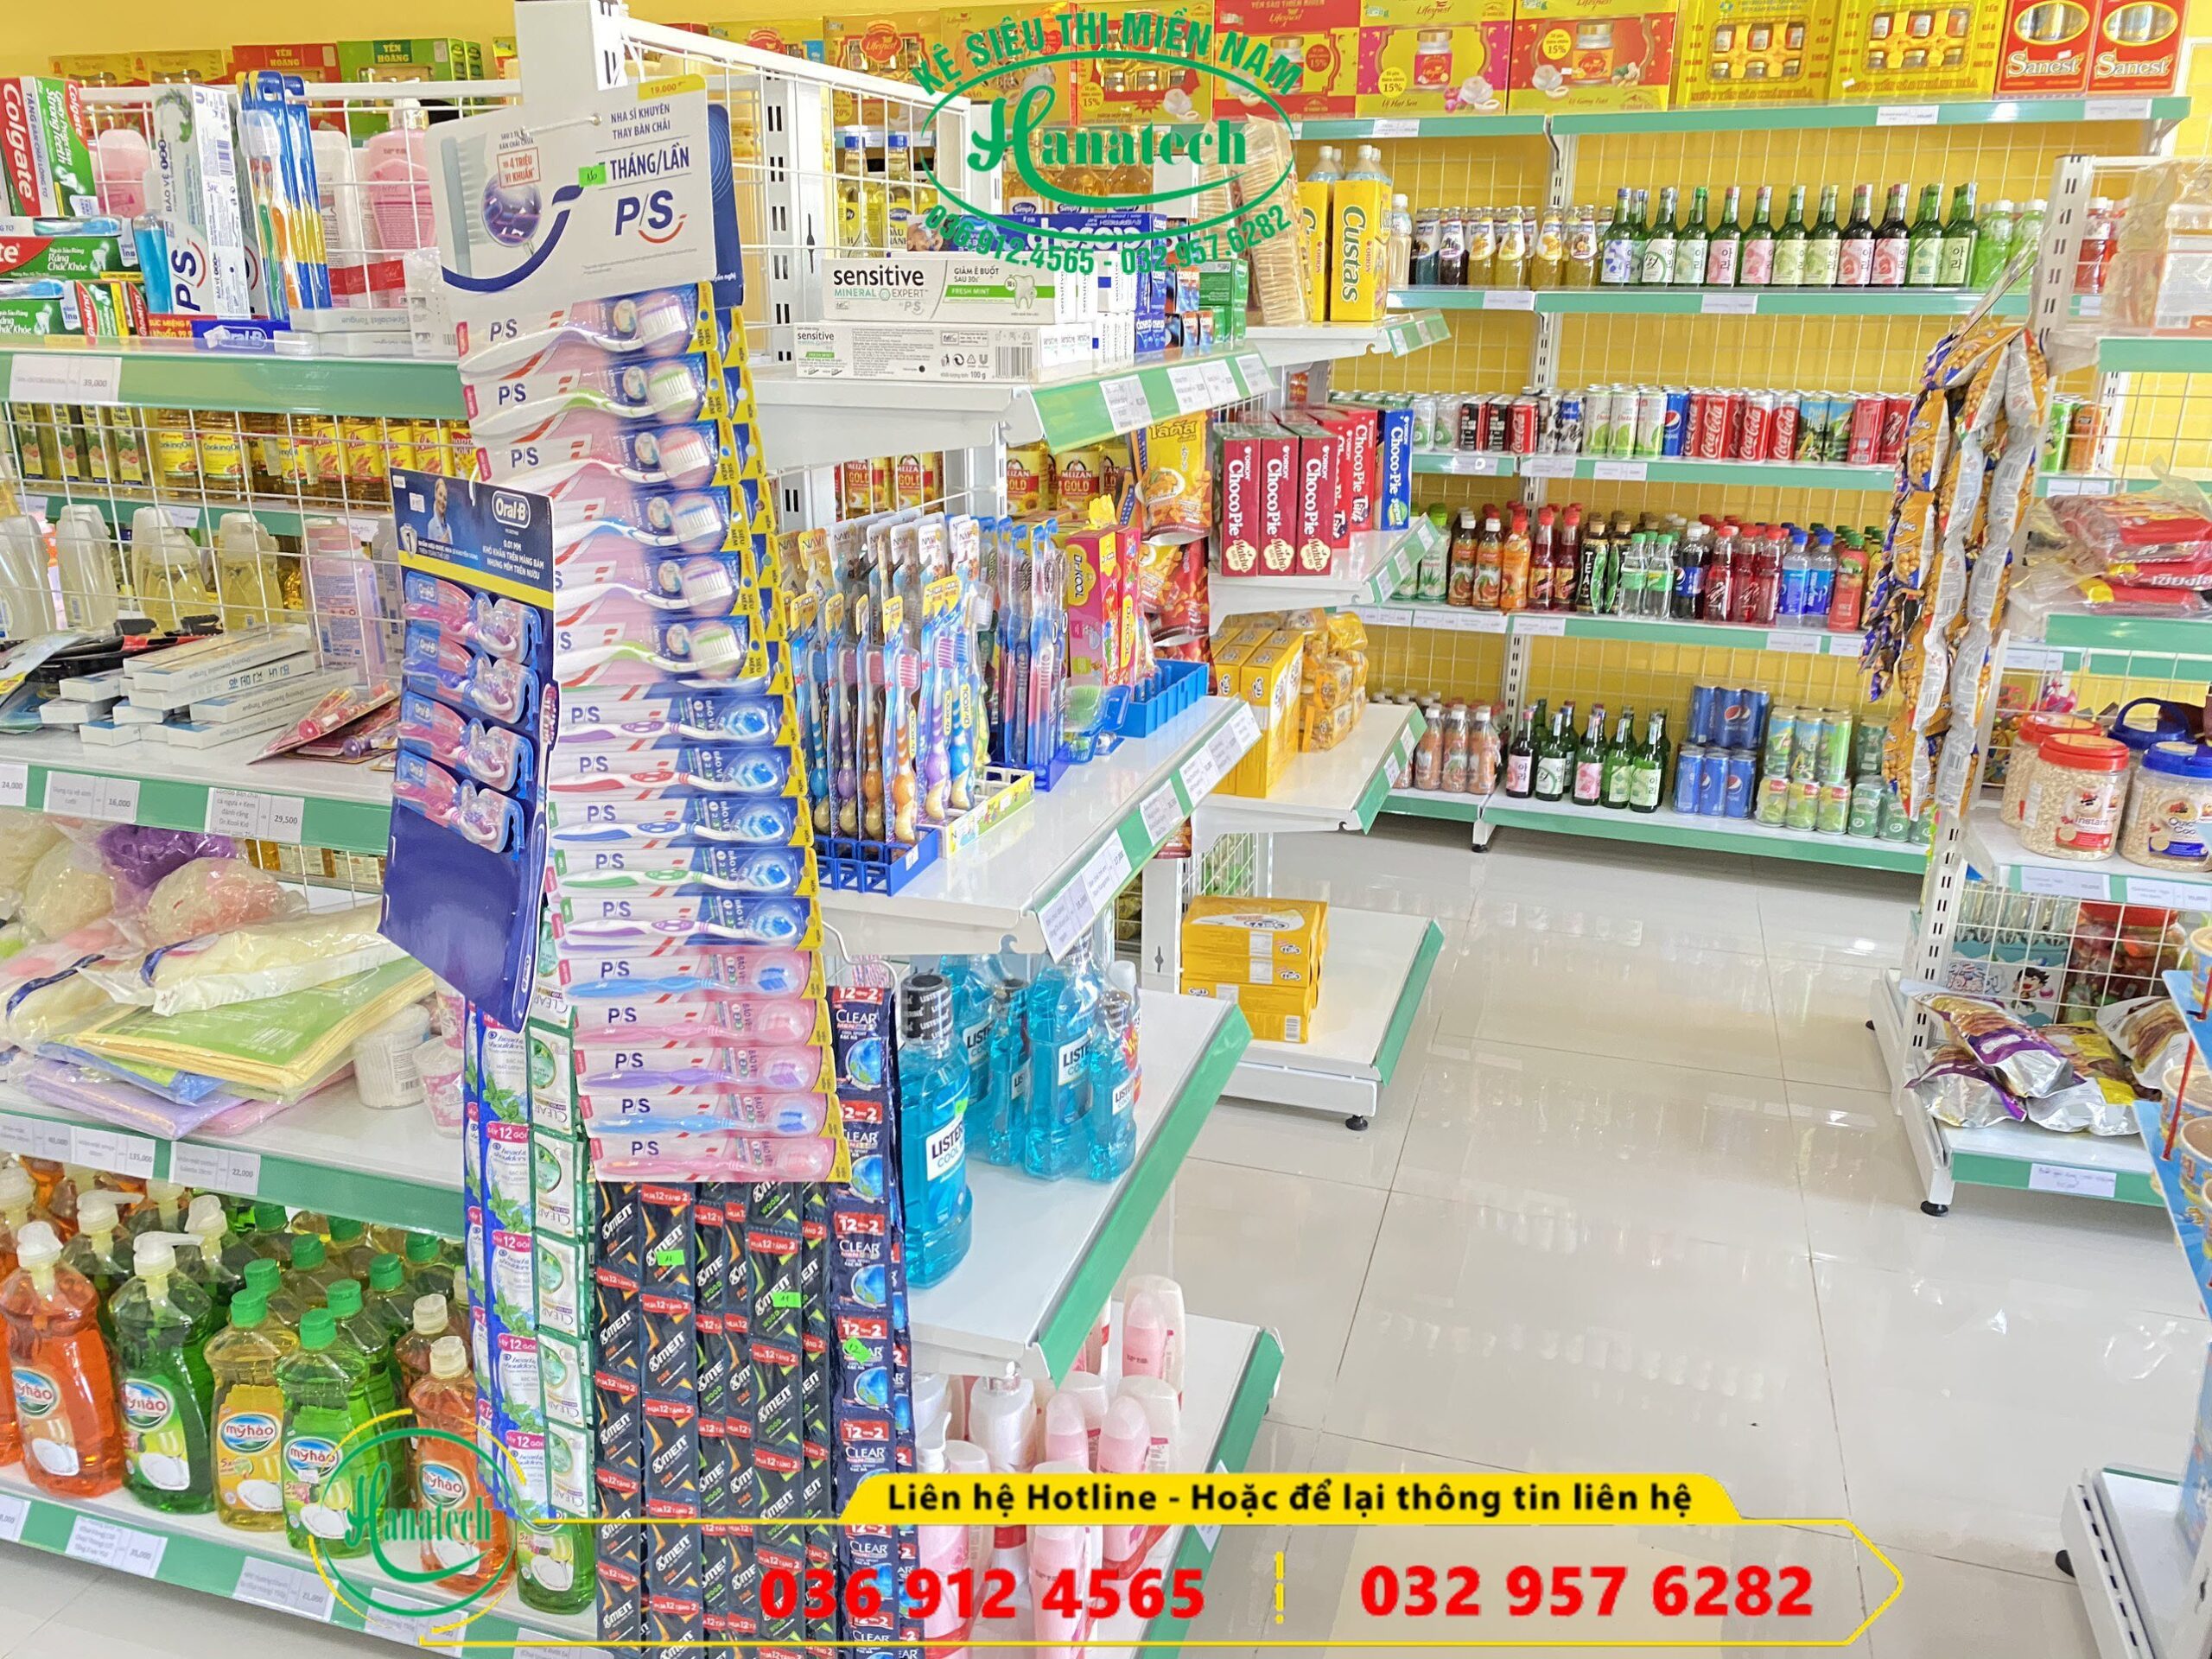 Giá kệ trưng bày sản phẩm cho cửa hàng tạp hóa tại TPHCM